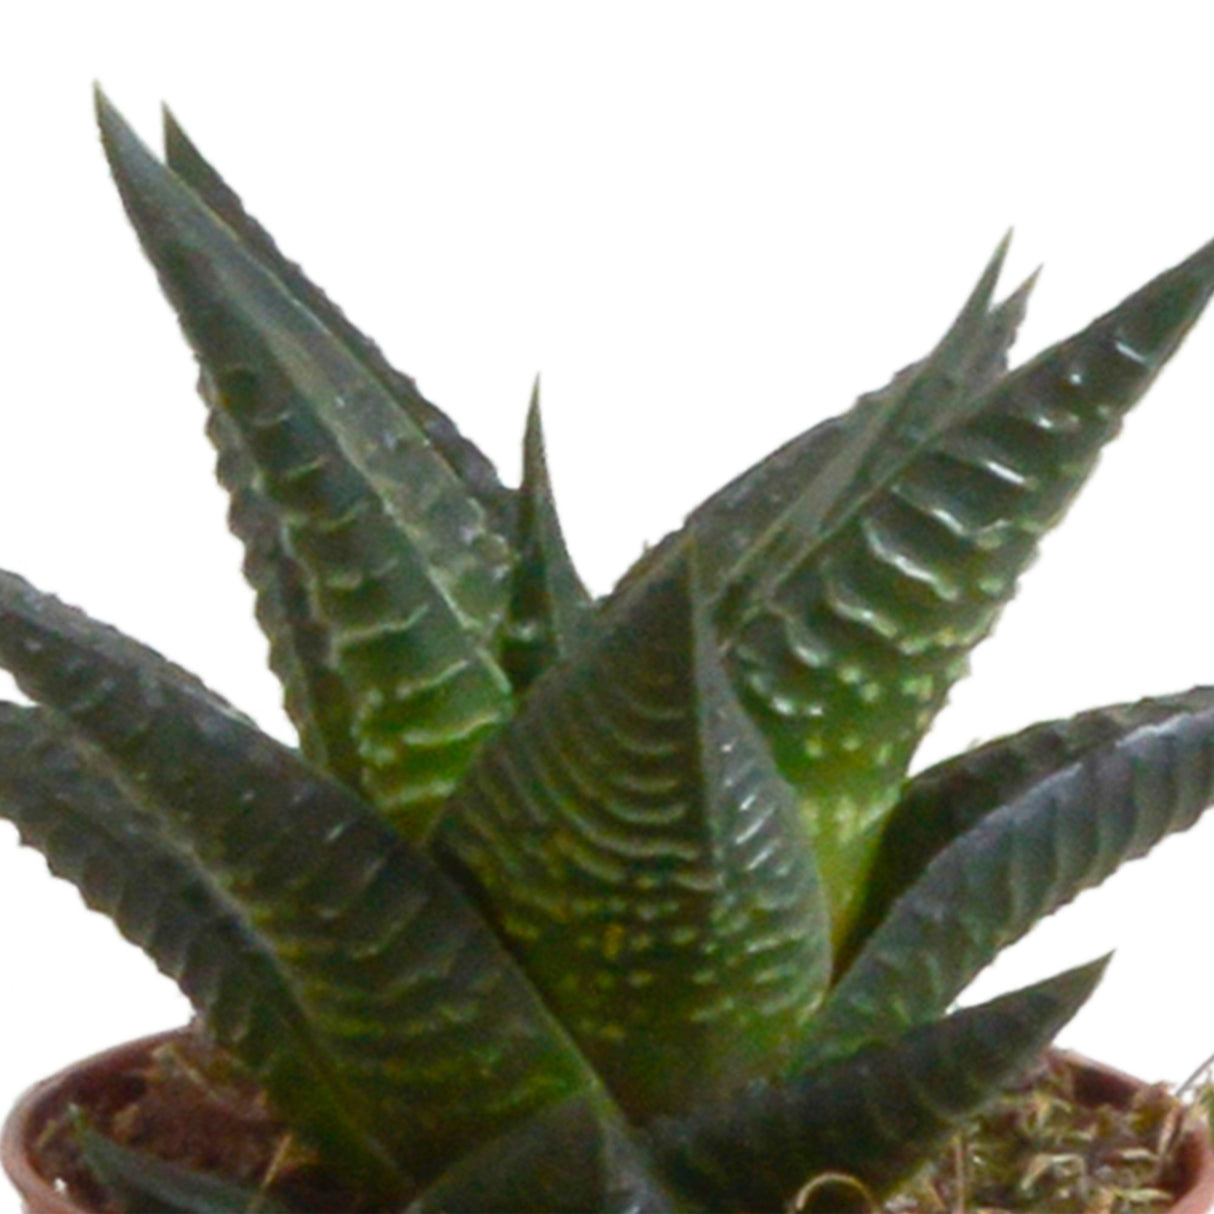 Livraison plante Coffret Gasteria, Haworthia et ses caches - pots terracotta - Lot de 5 plantes, h13cm